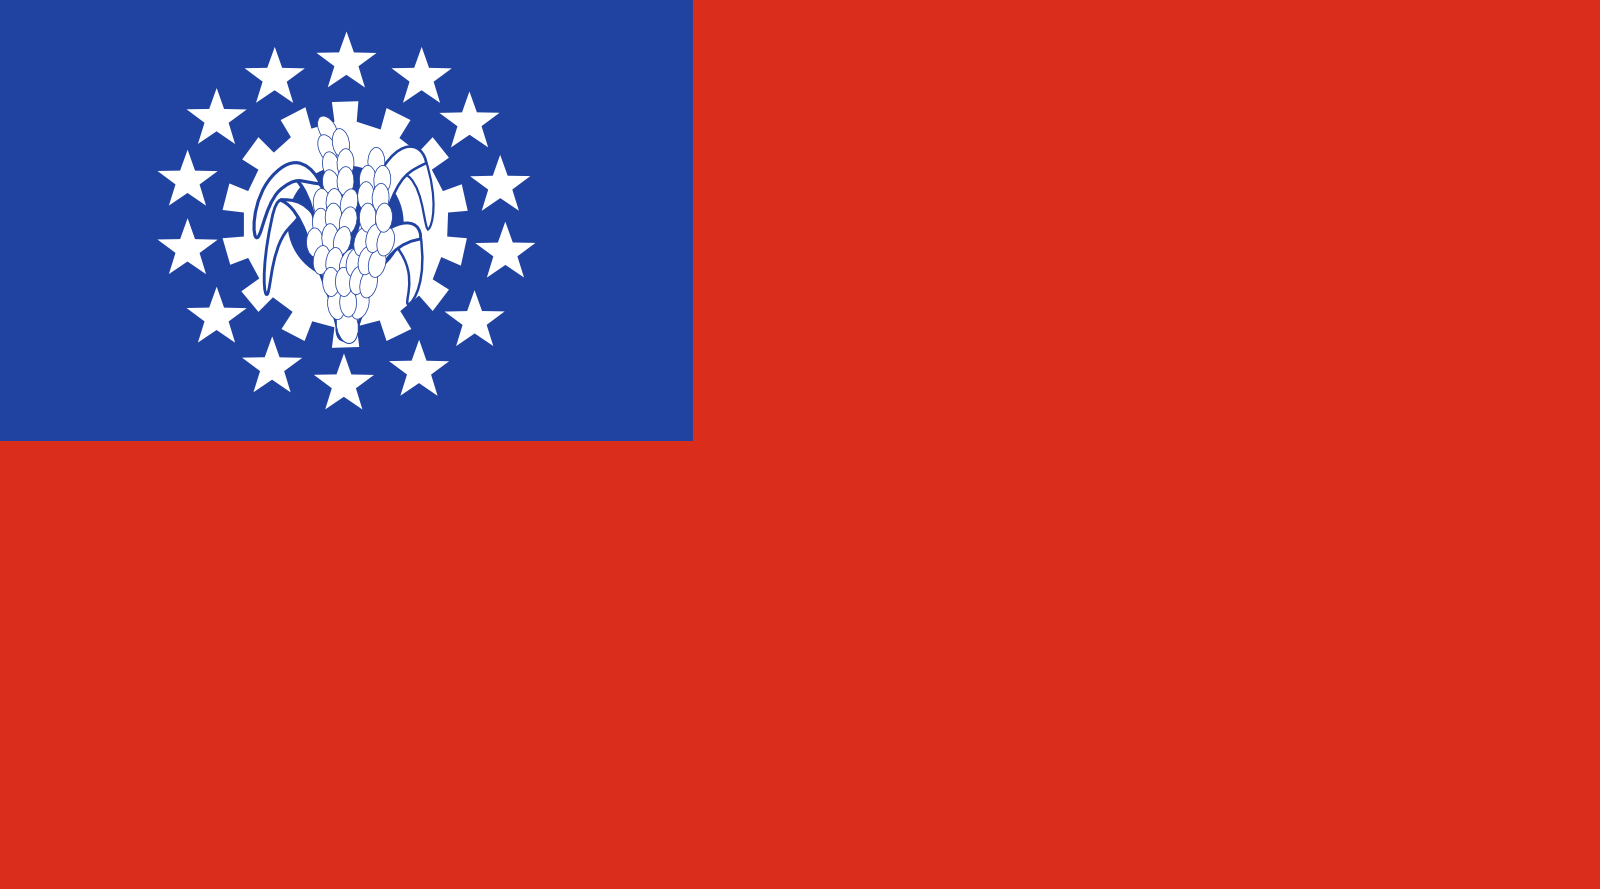 缅甸国旗(网络热门国旗鉴定,没用的知识又增加了)